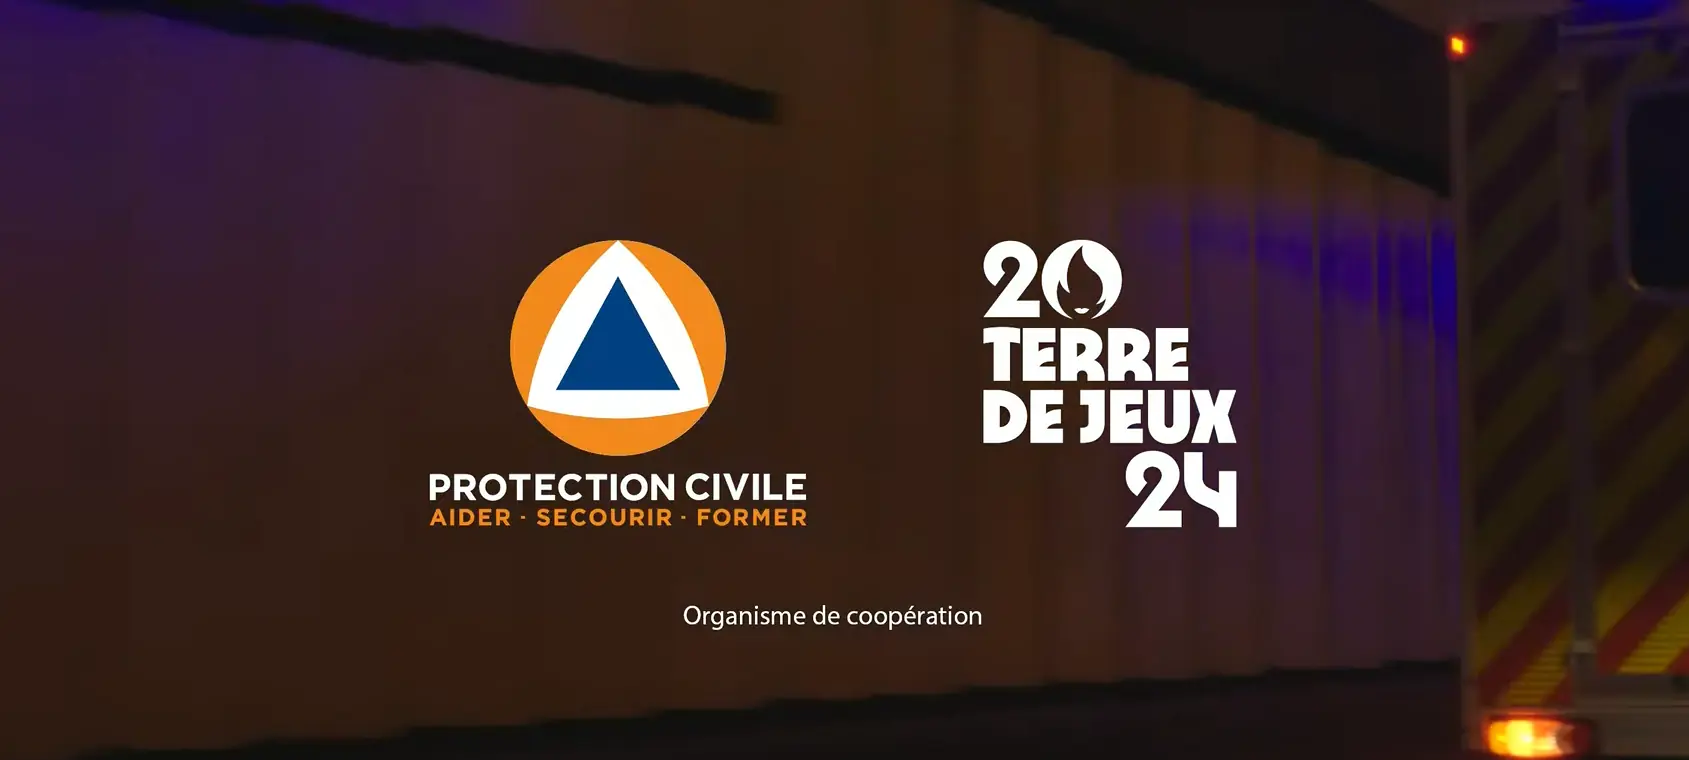 Lire la suite à propos de l’article Spot TV Protection Civile Jeux de Paris 2024